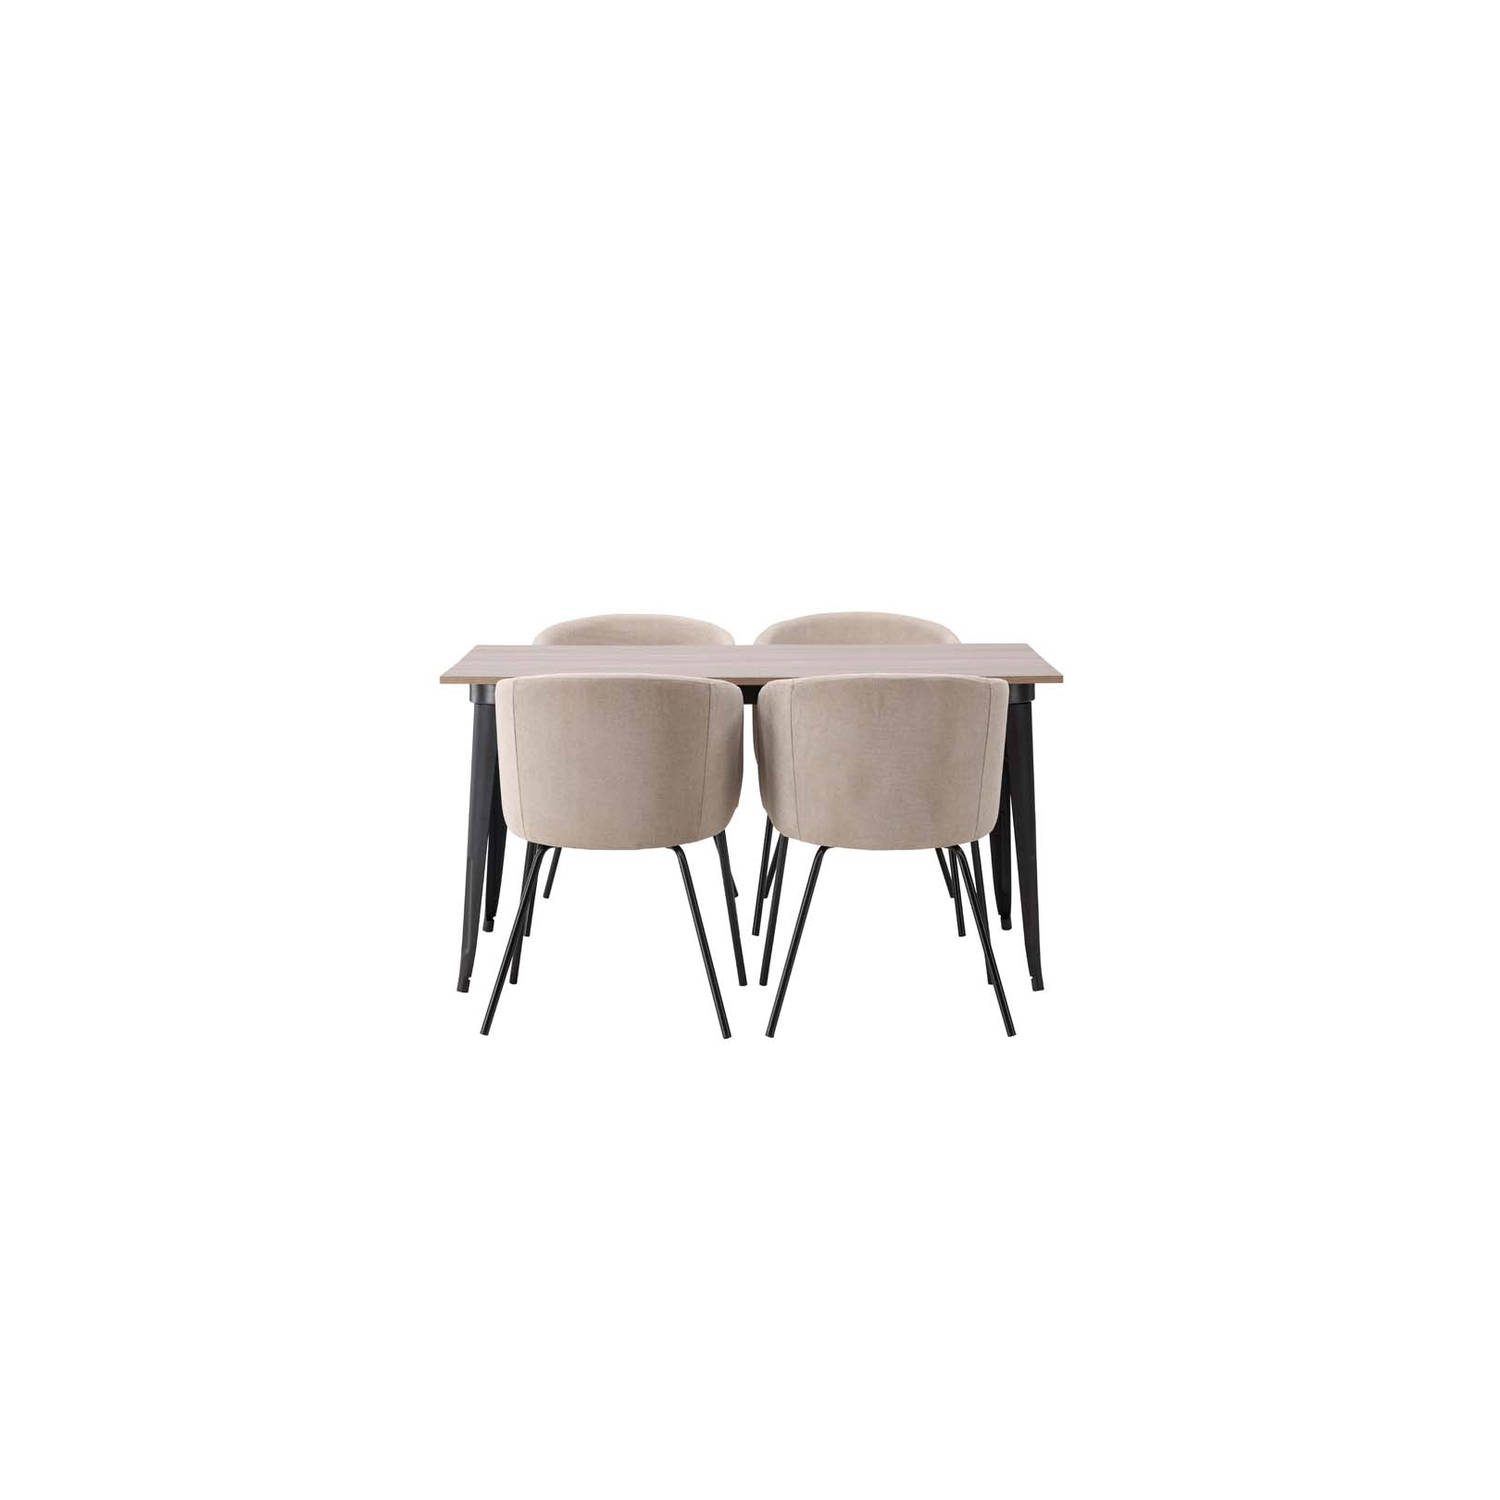 Tempe eethoek tafel okkernoot decor en 4 berit stoelen beige.